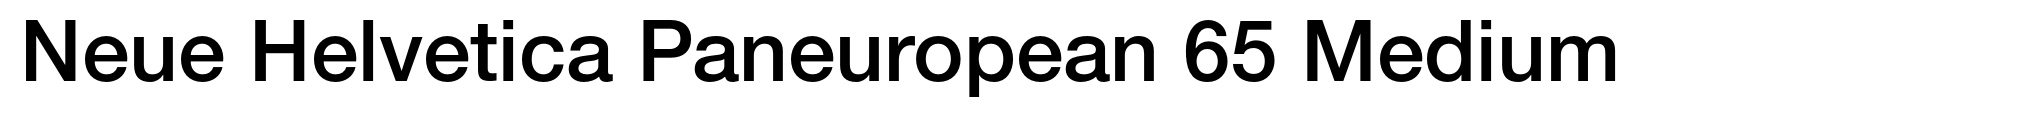 Neue Helvetica Paneuropean 65 Medium image